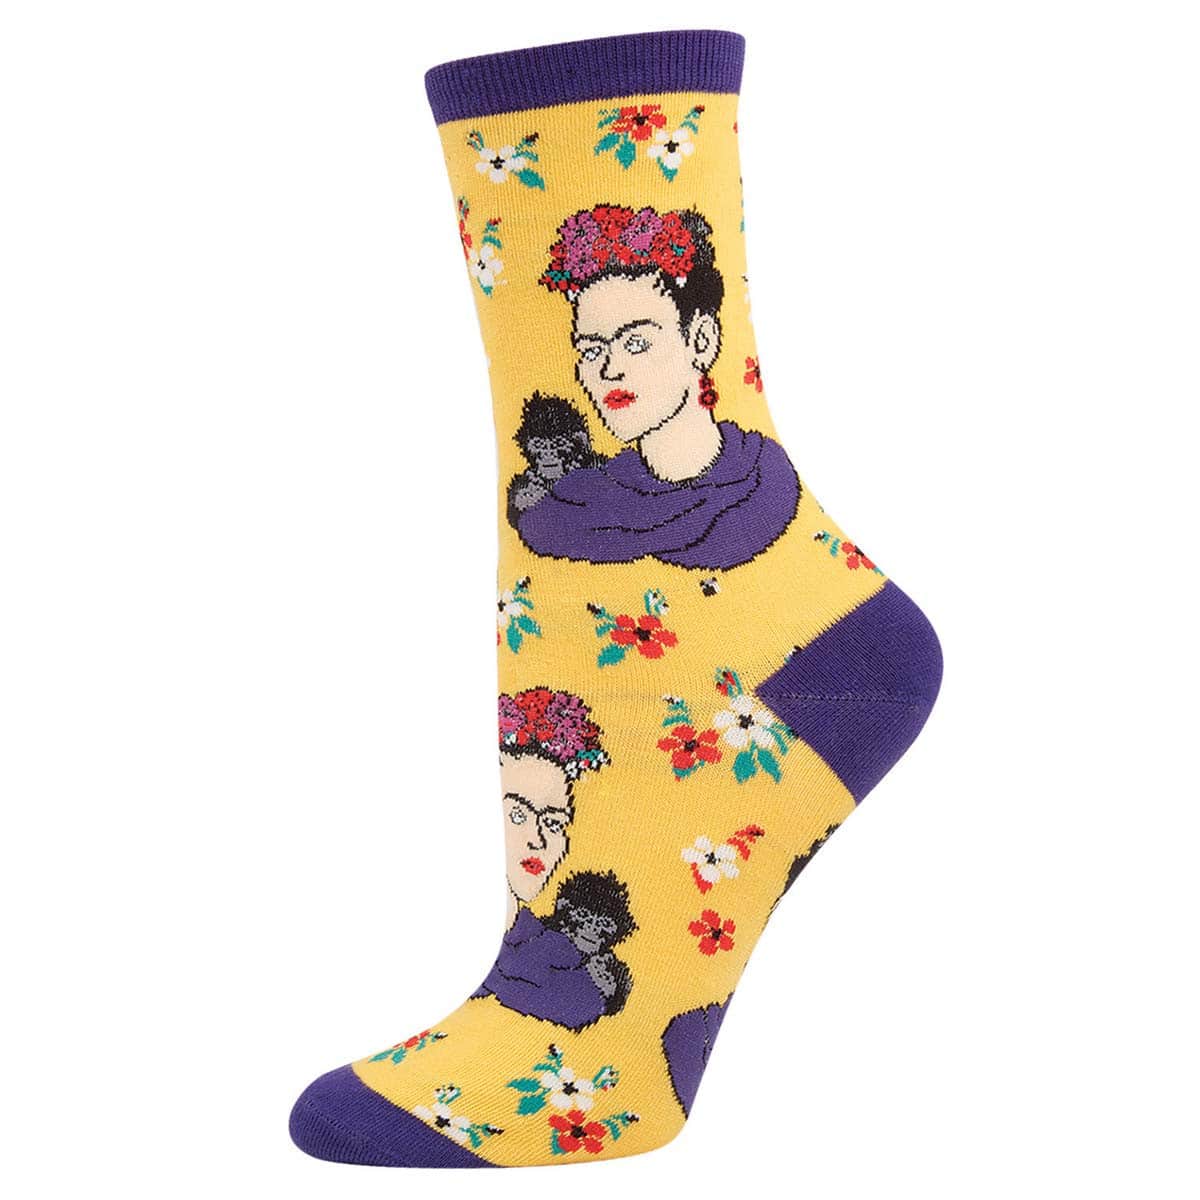 גרביים לנשים kahlo portrait צהוב, גיפטד